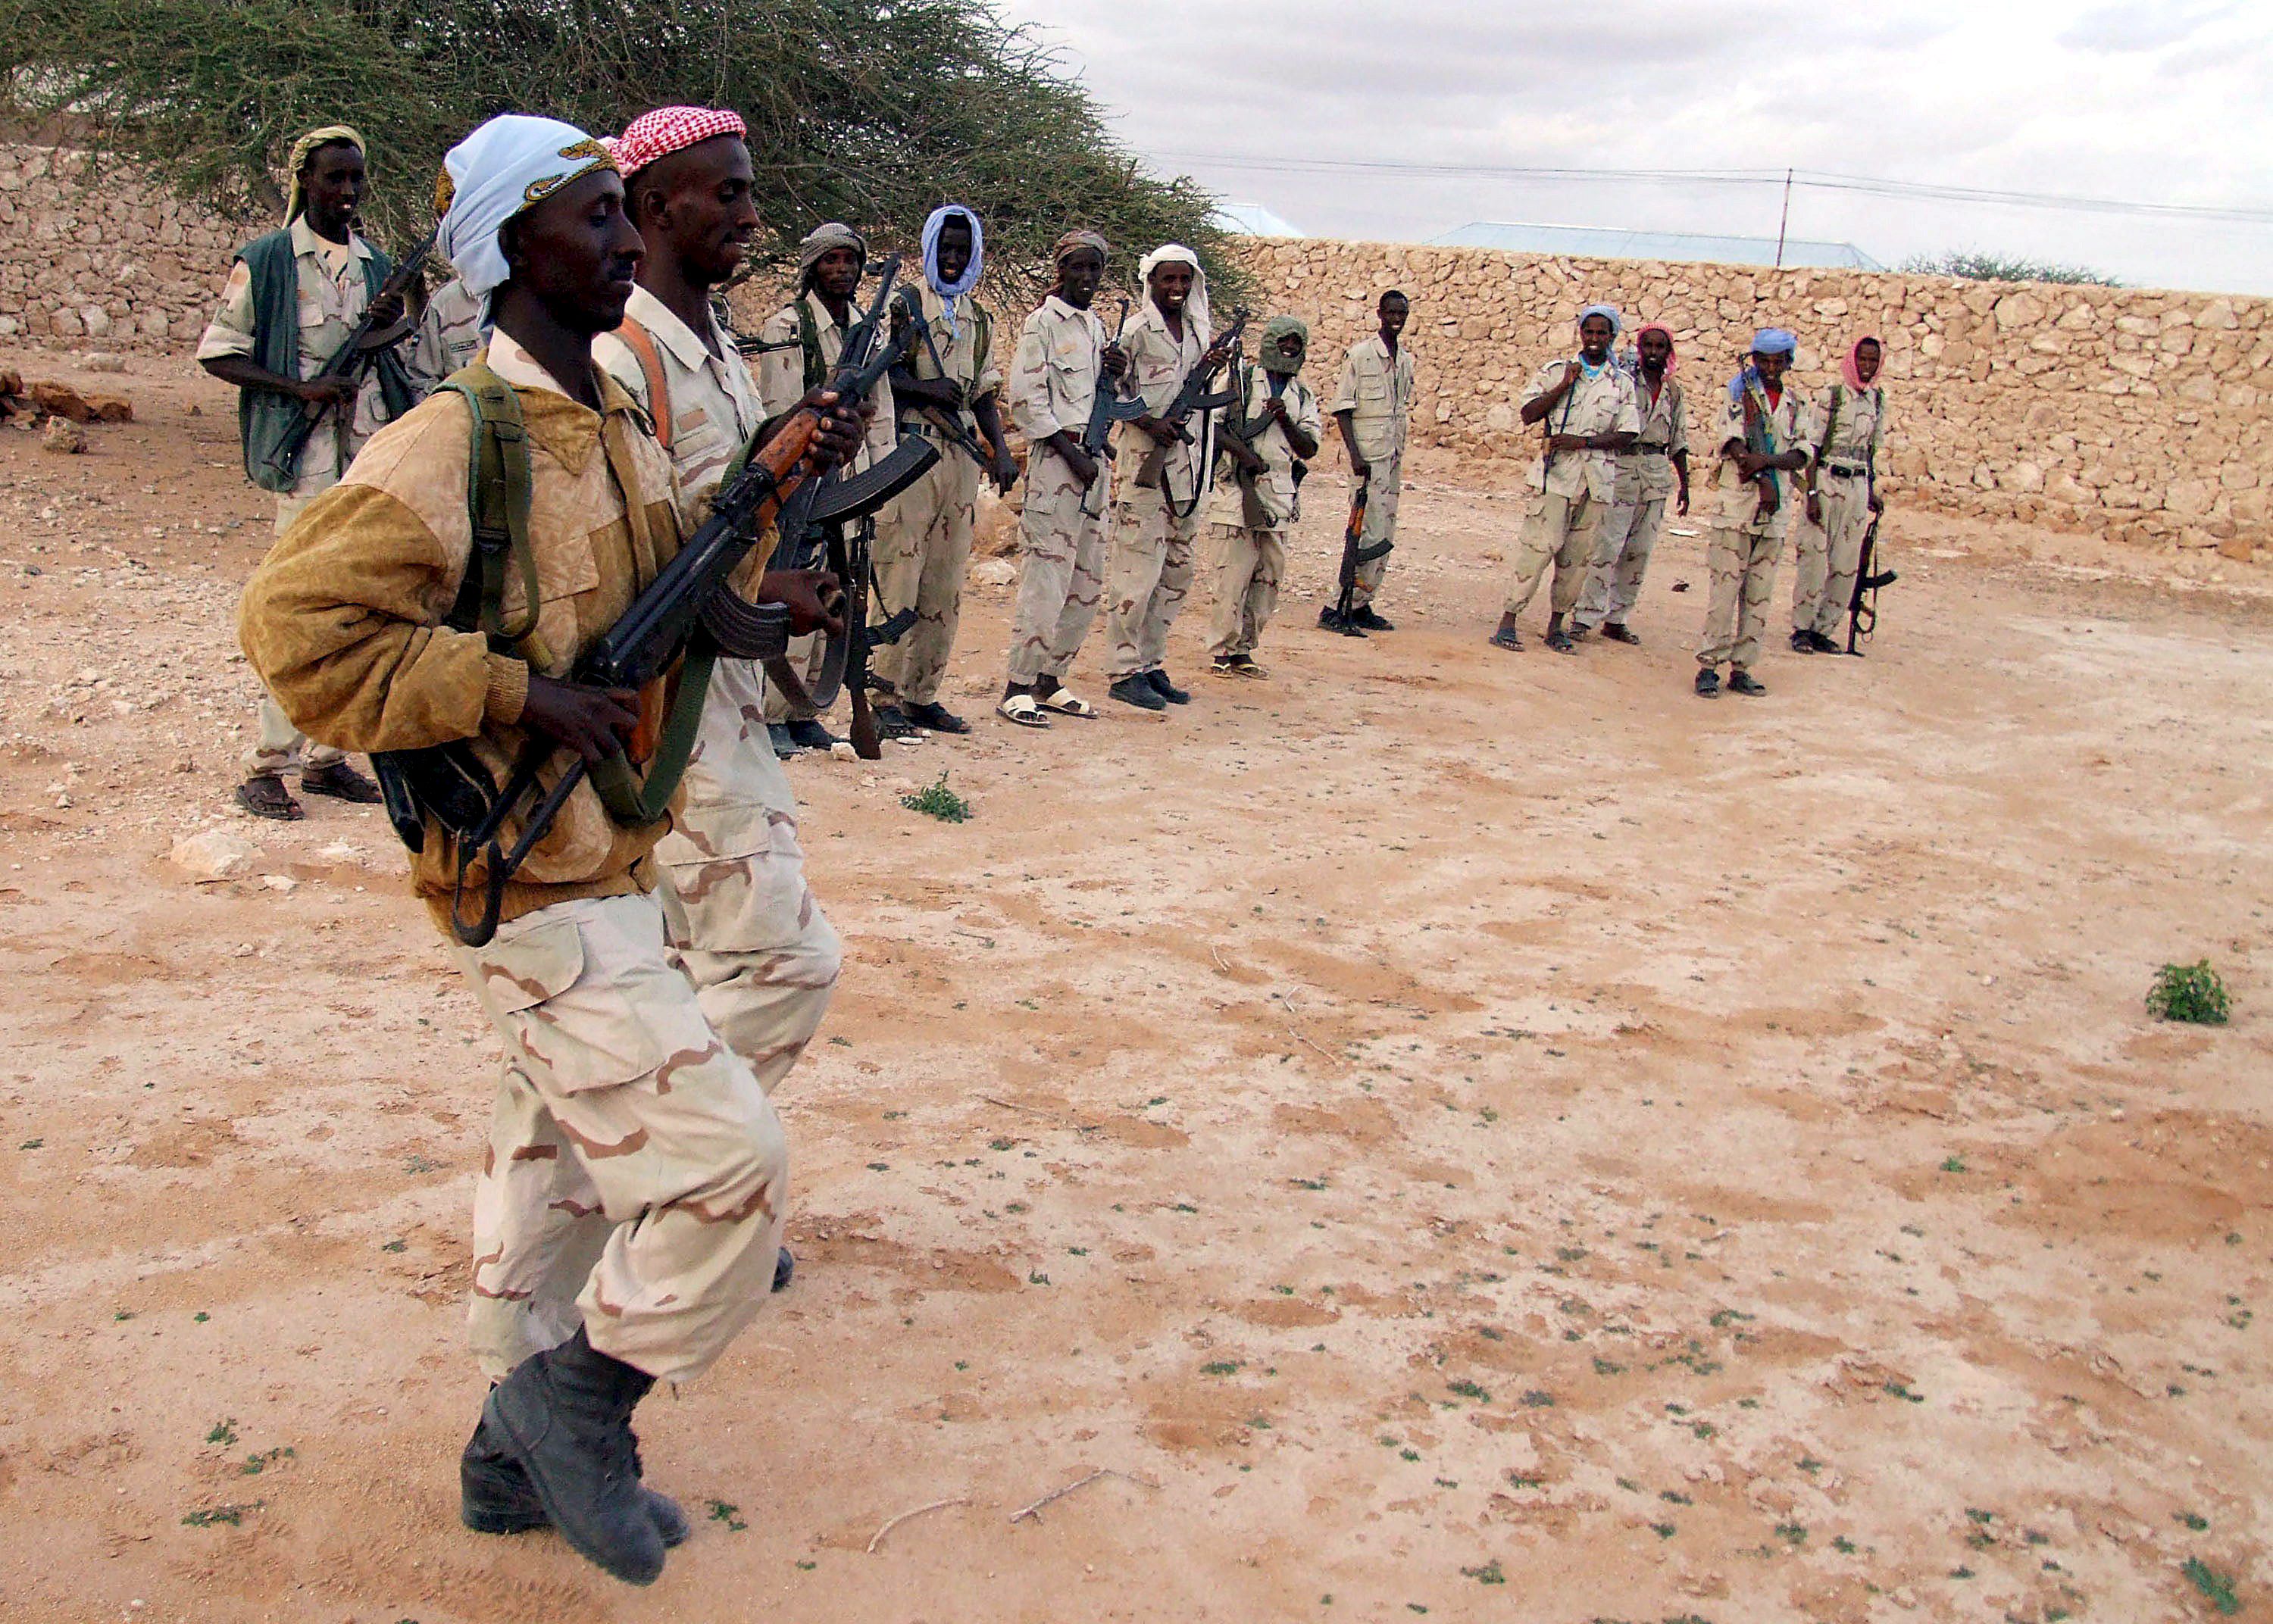 Al Shabad y la persecución étnica en Somalia